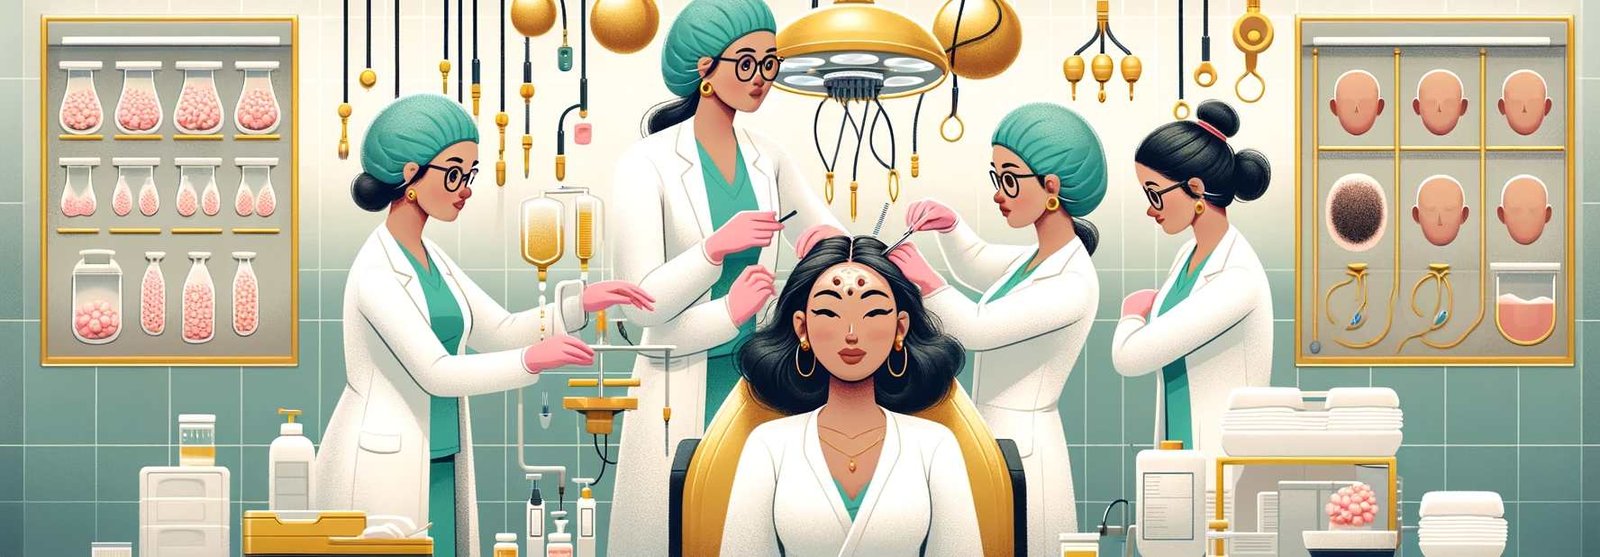 Hair Transplant for Women in Turkey